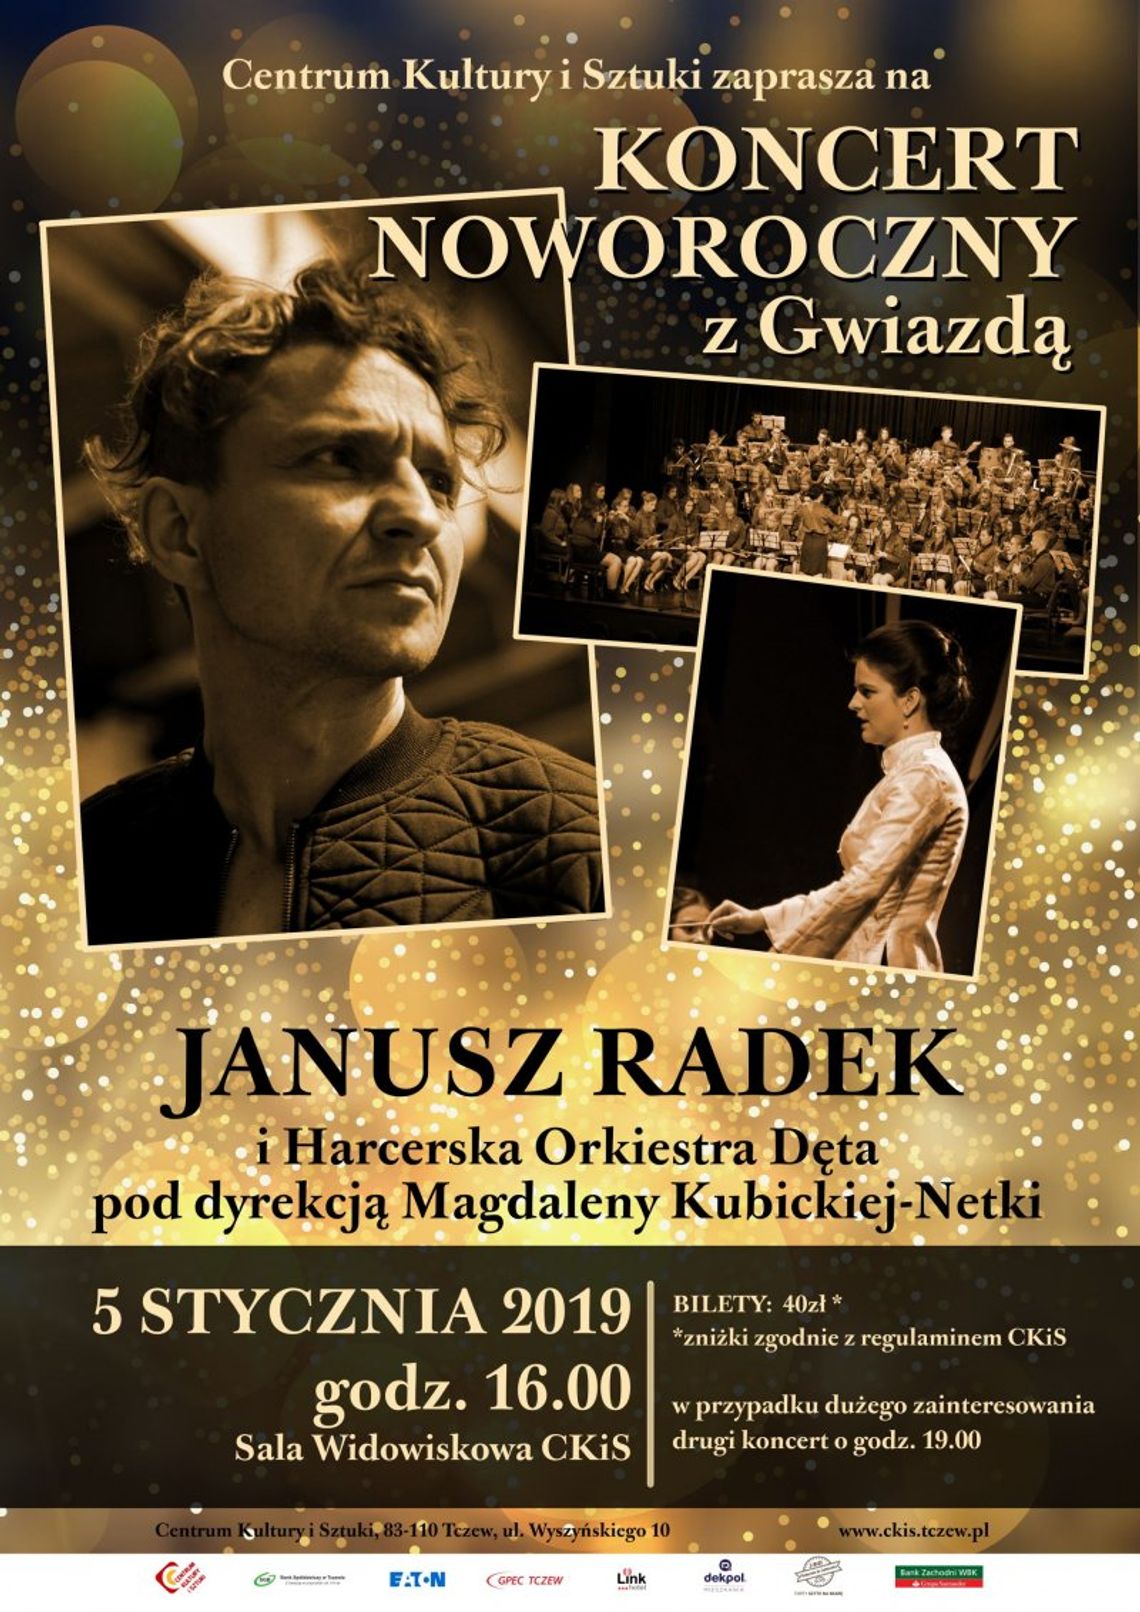 Harcerska Orkiestra Dęta i Janusz Radek - koncert z Gwiazdą.